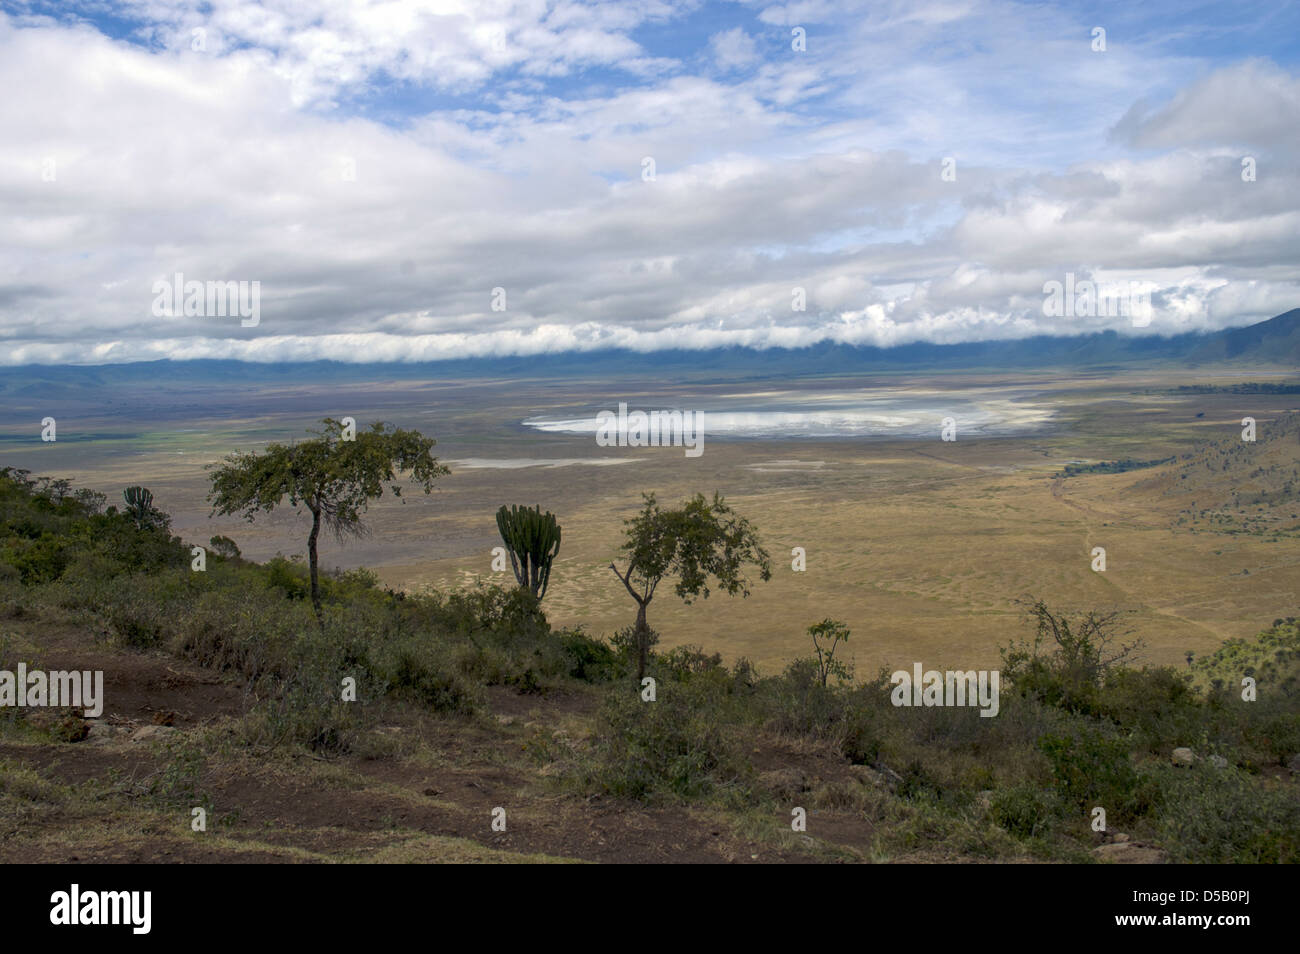 Africa, Tanzania, el cráter del Ngorongoro una vista de la formación geológica Foto de stock